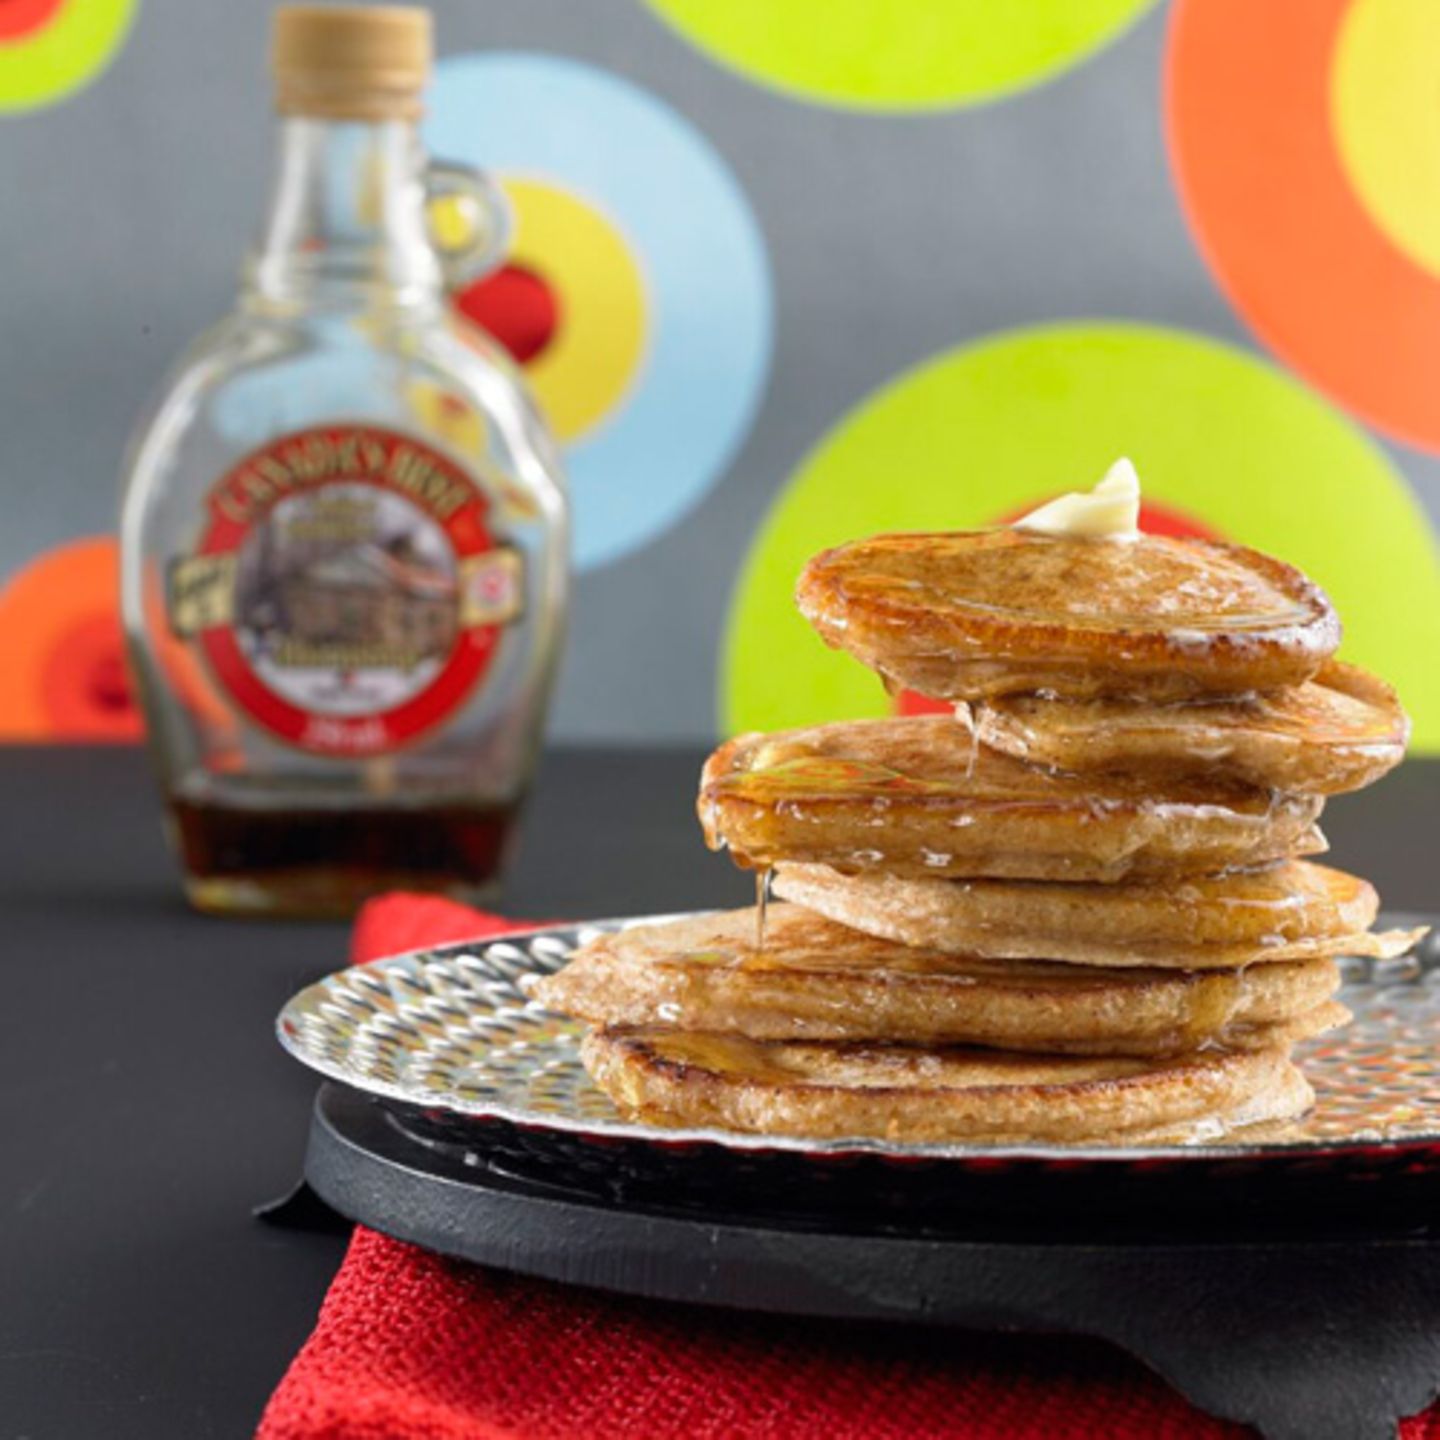 Sie dürfen bei keinem amerikanischen Breakfast fehlen: Pancakes. Traditionell werden sie mit warmem Ahornsirup serviert. Rezept: Vollkorn-Pancakes mit Ahornsirup